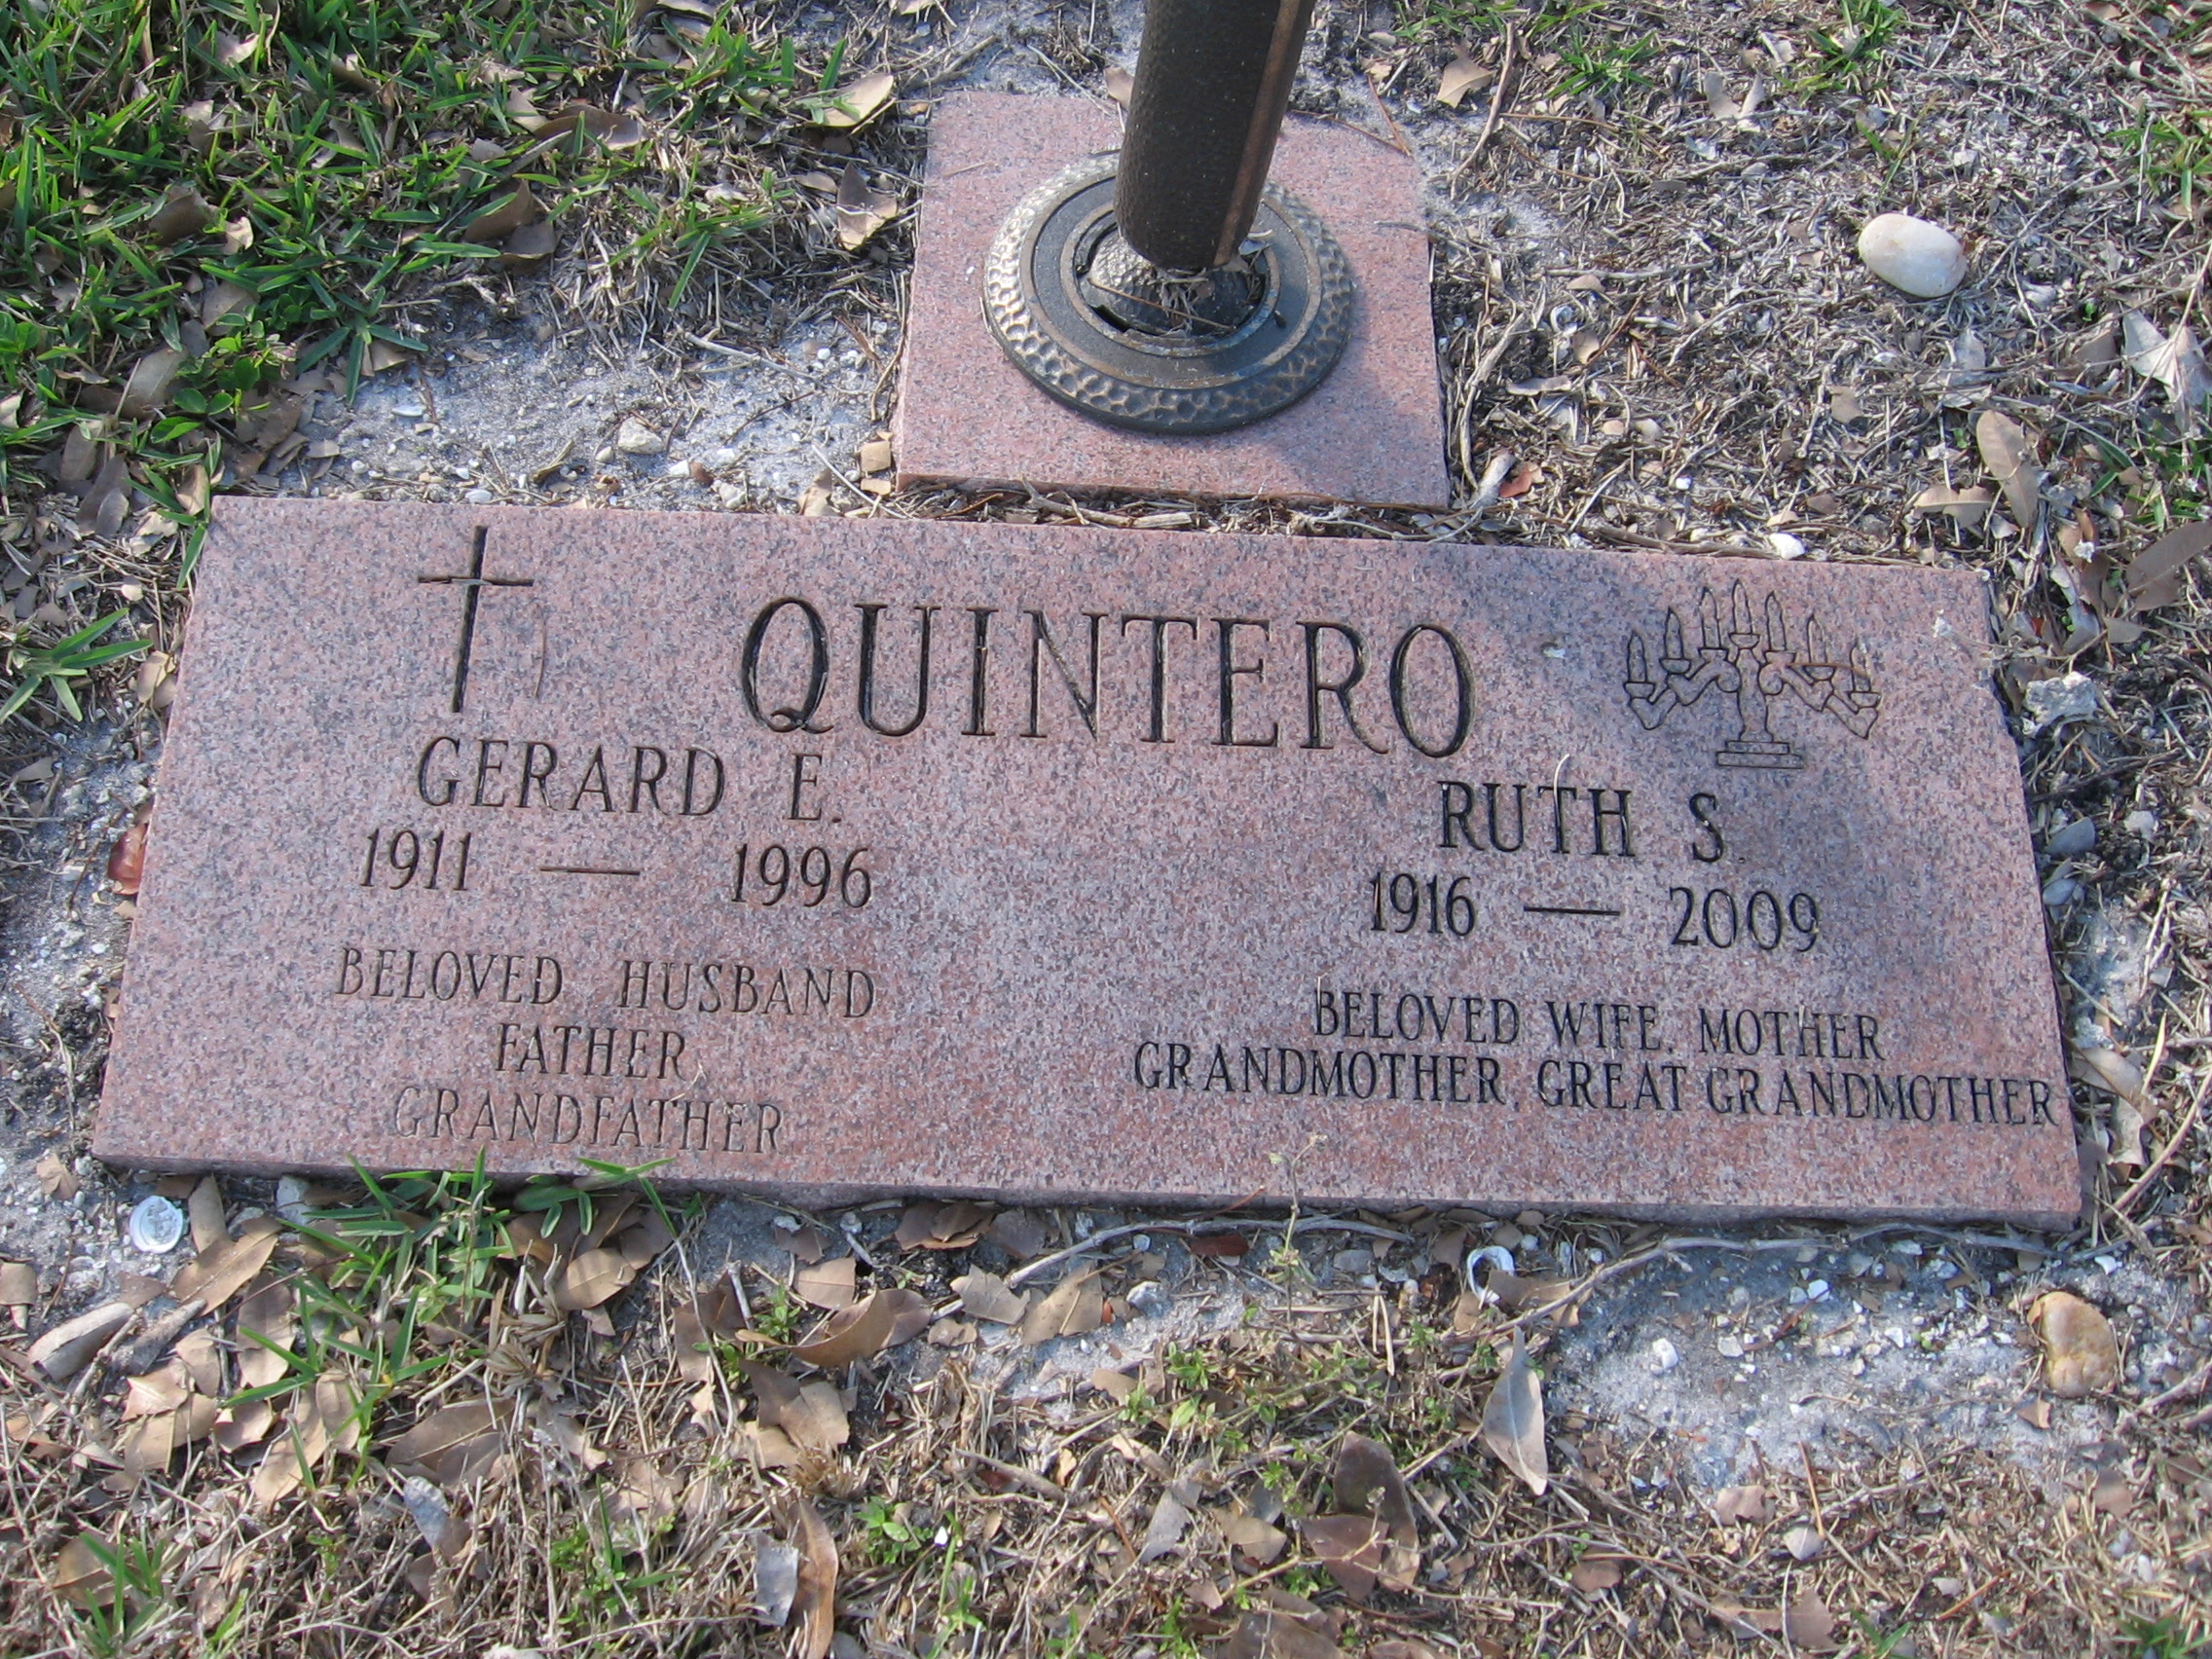 Gerard E Quintero